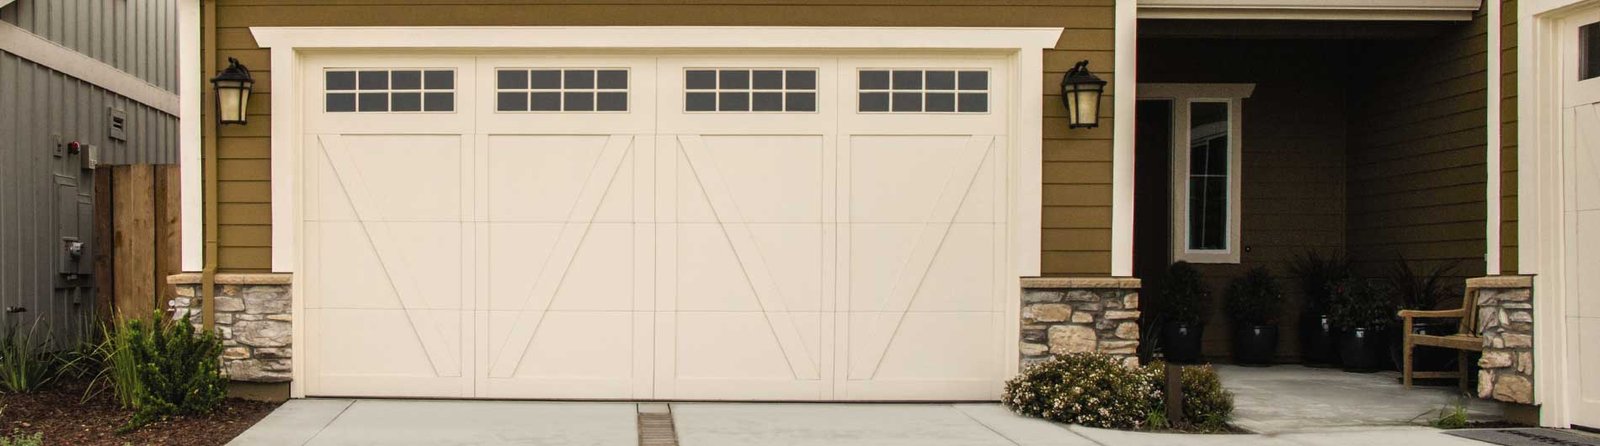 6600-CH-Garage-Door-Bellview-CustomPaint-StocktonIII